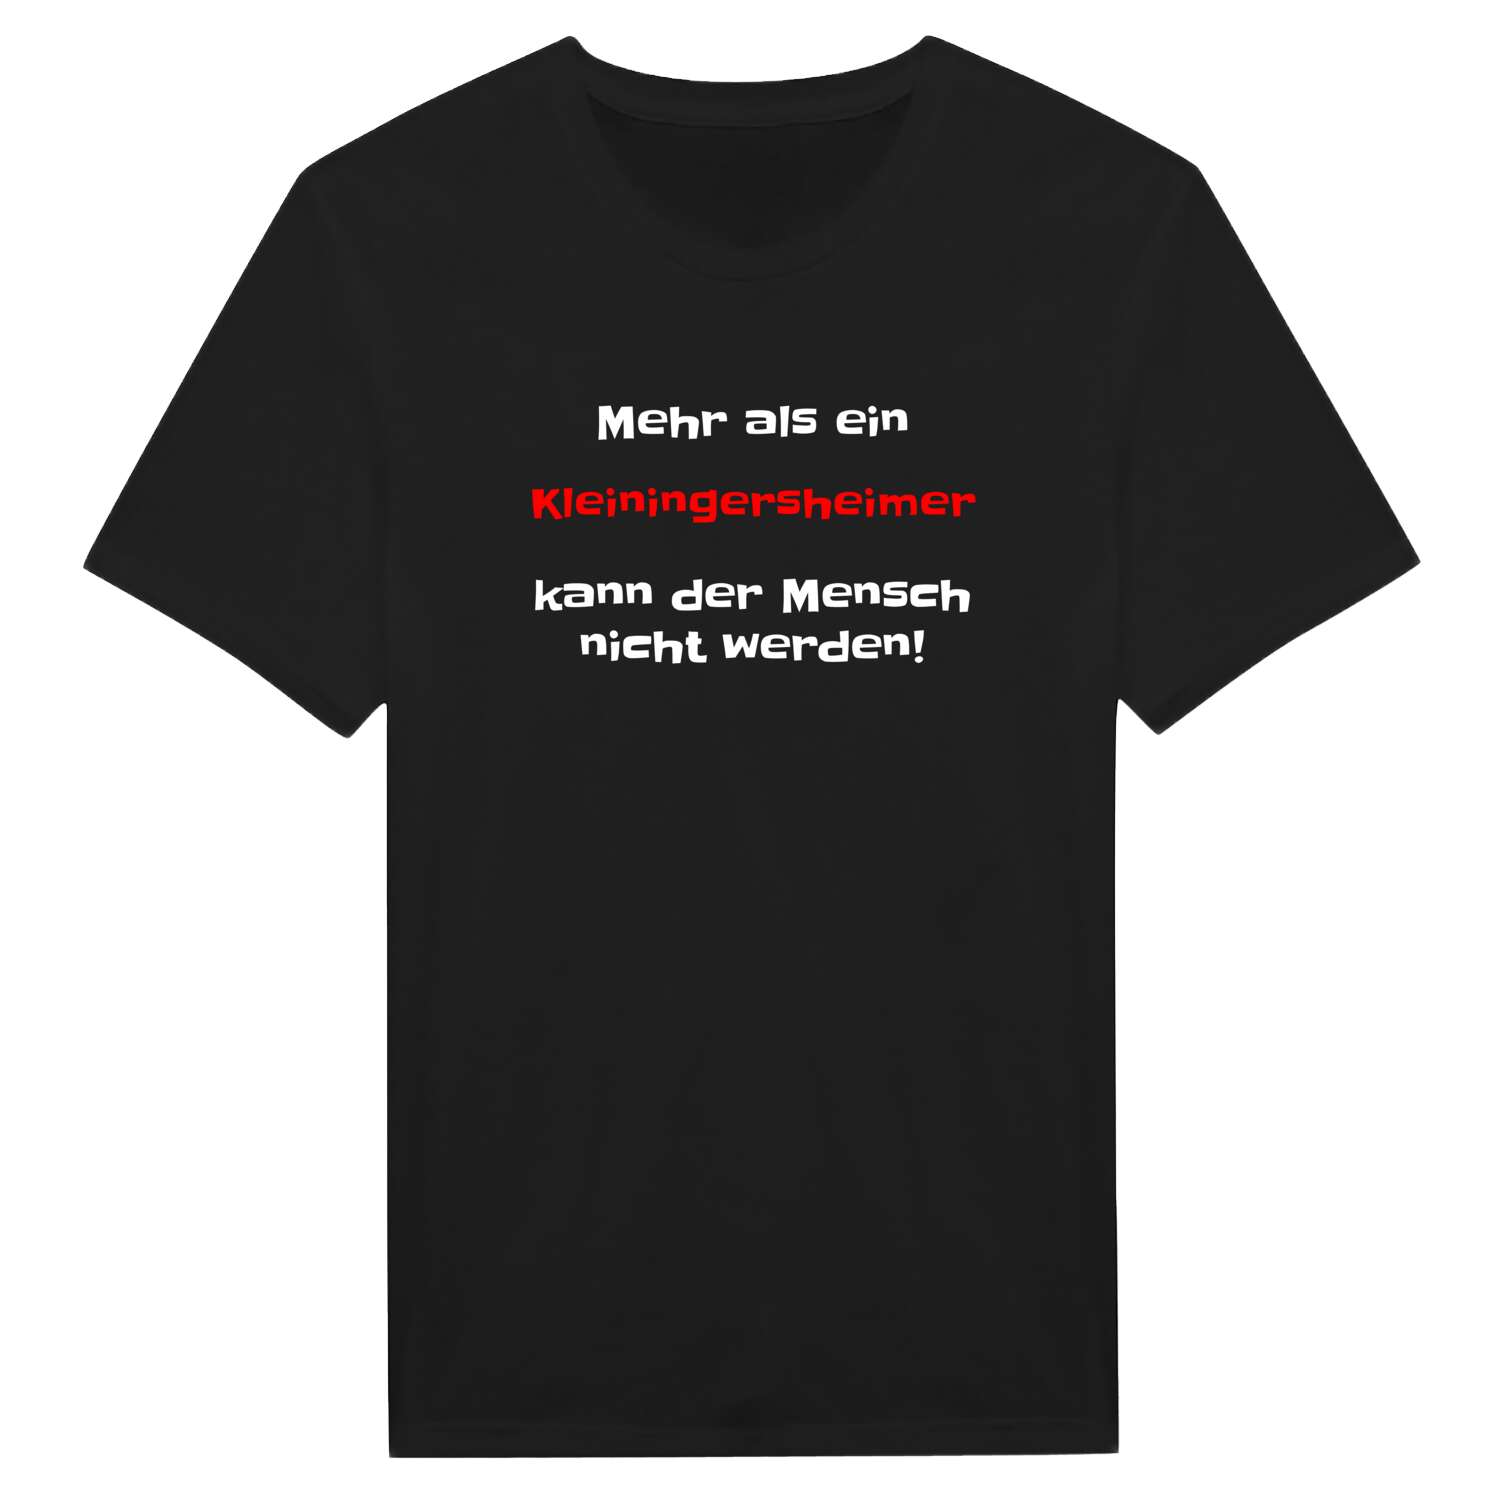 Kleiningersheim T-Shirt »Mehr als ein«